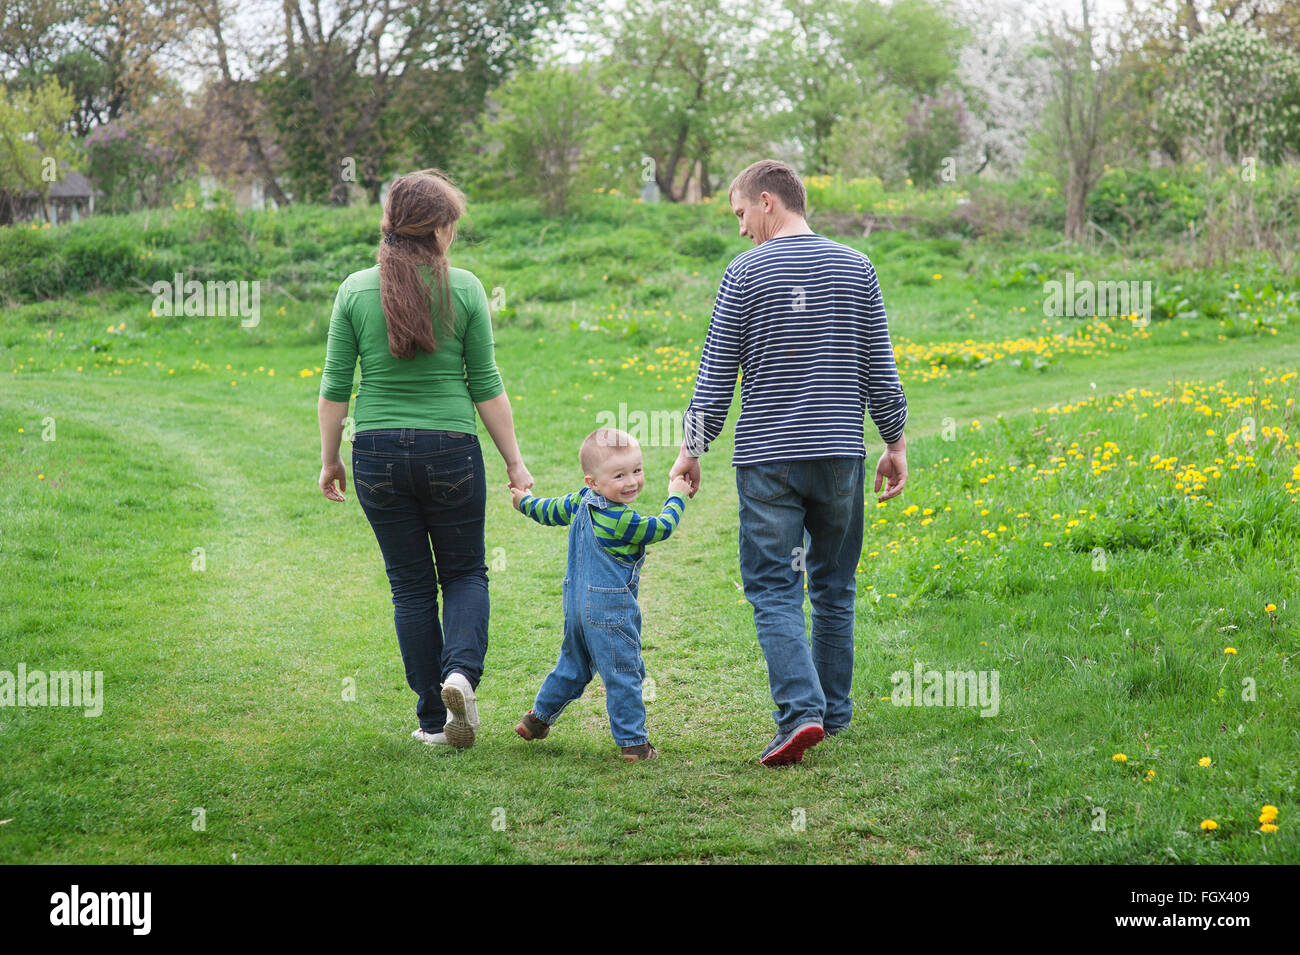 Eltern gehen mit einem kleinen Jungen auf einem grünen Frühlingswiese auf einem Wanderweg Stockfoto